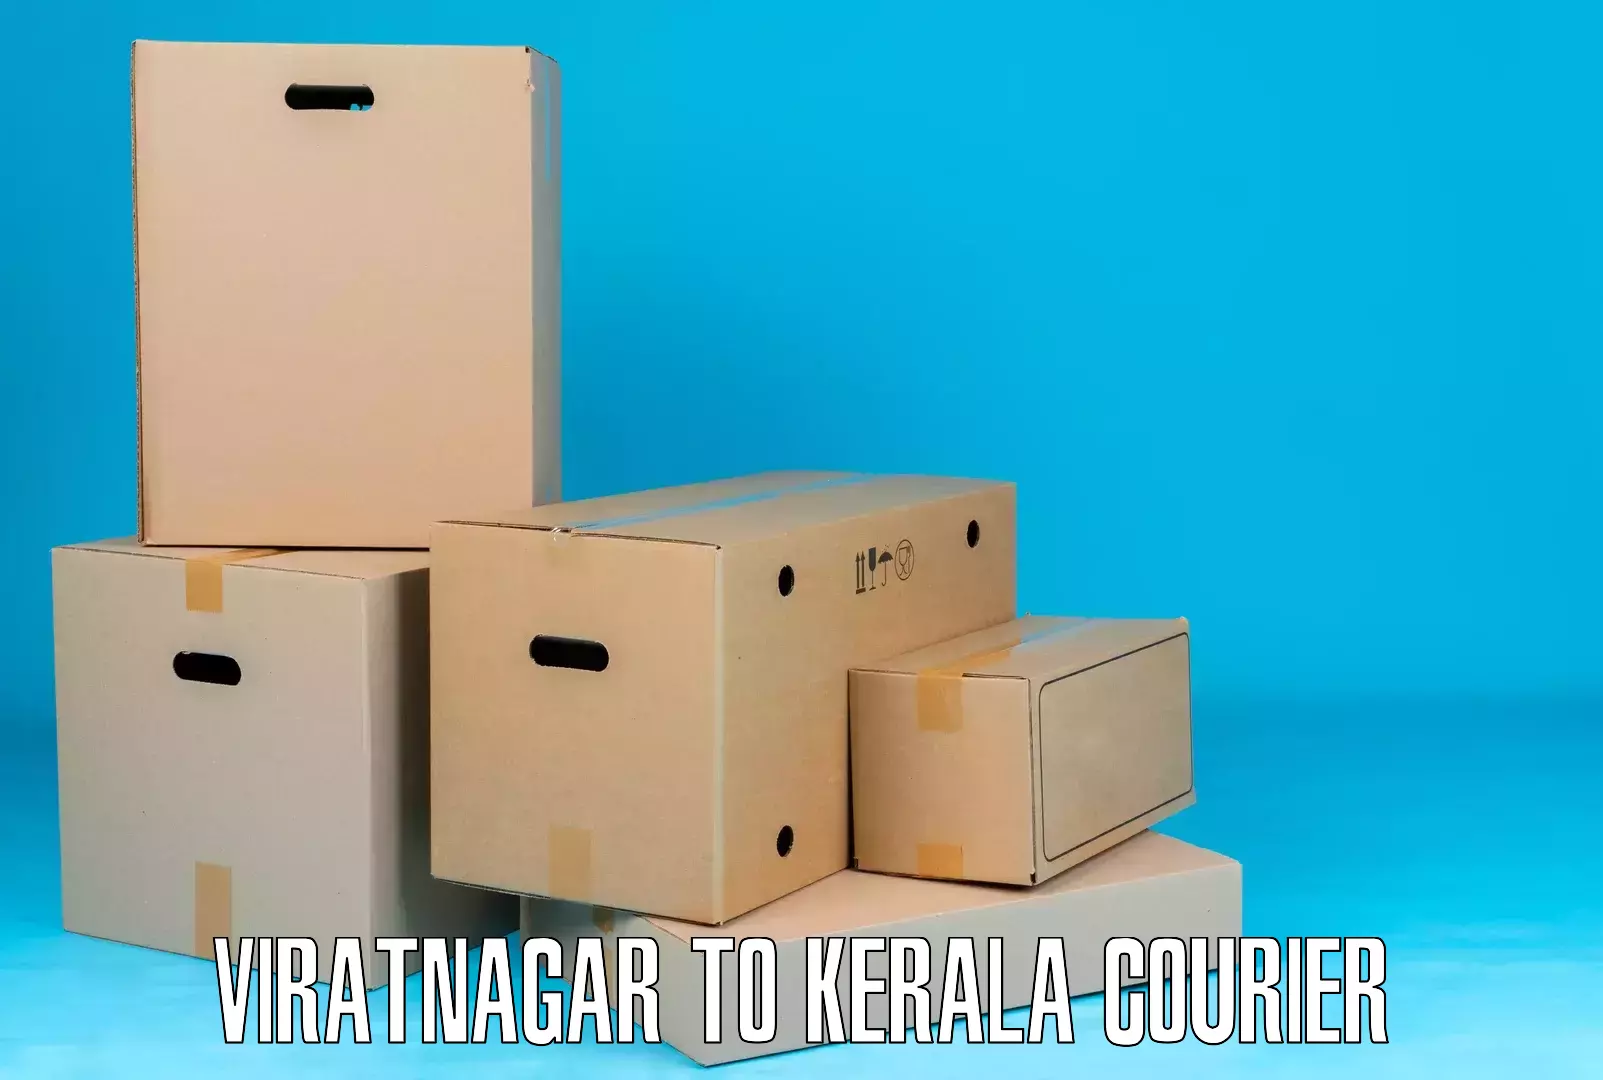 Efficient cargo services Viratnagar to Kuthiathode